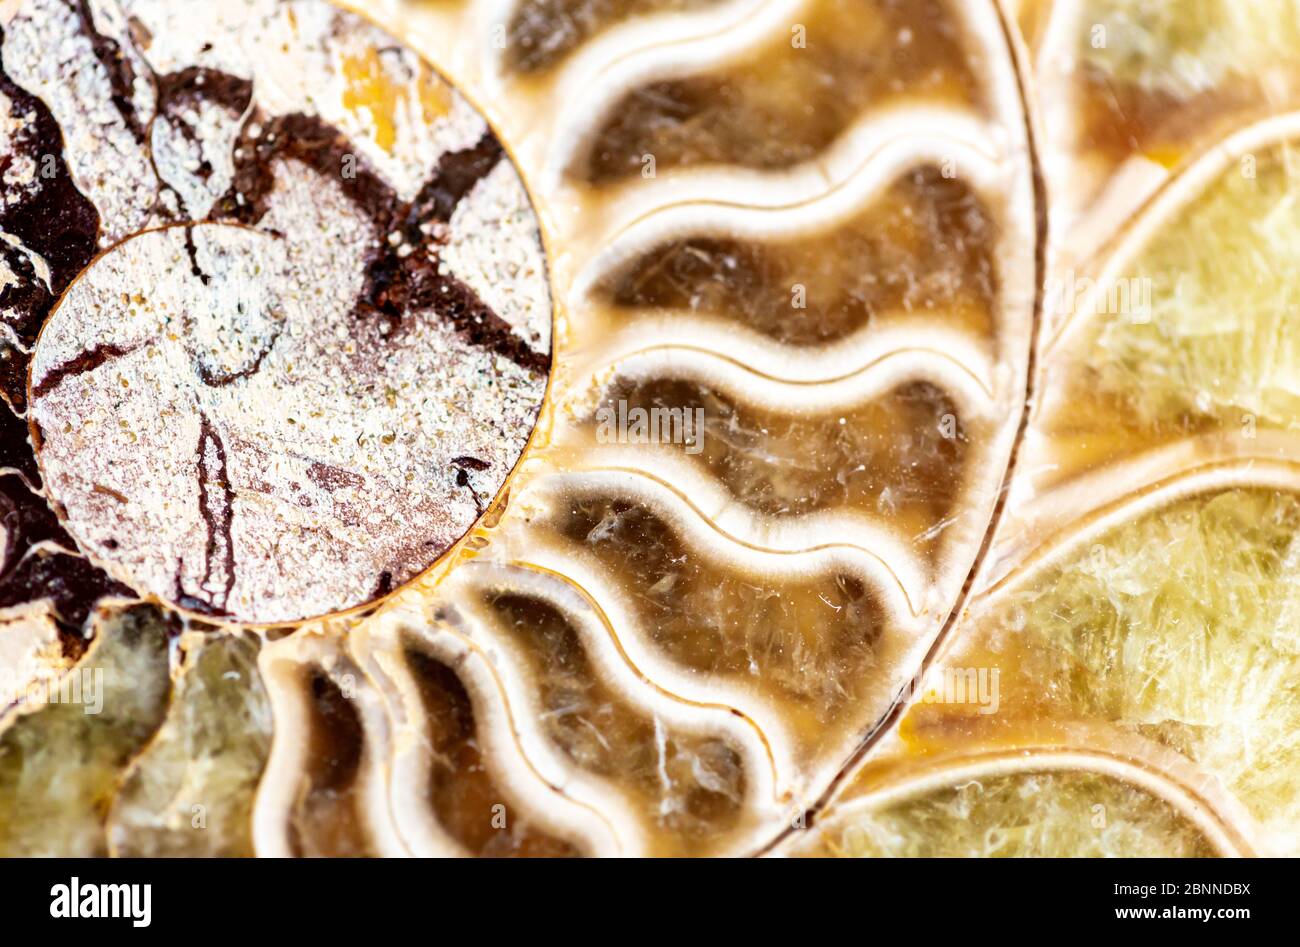 gros plan d'un fossile ammonite Banque D'Images